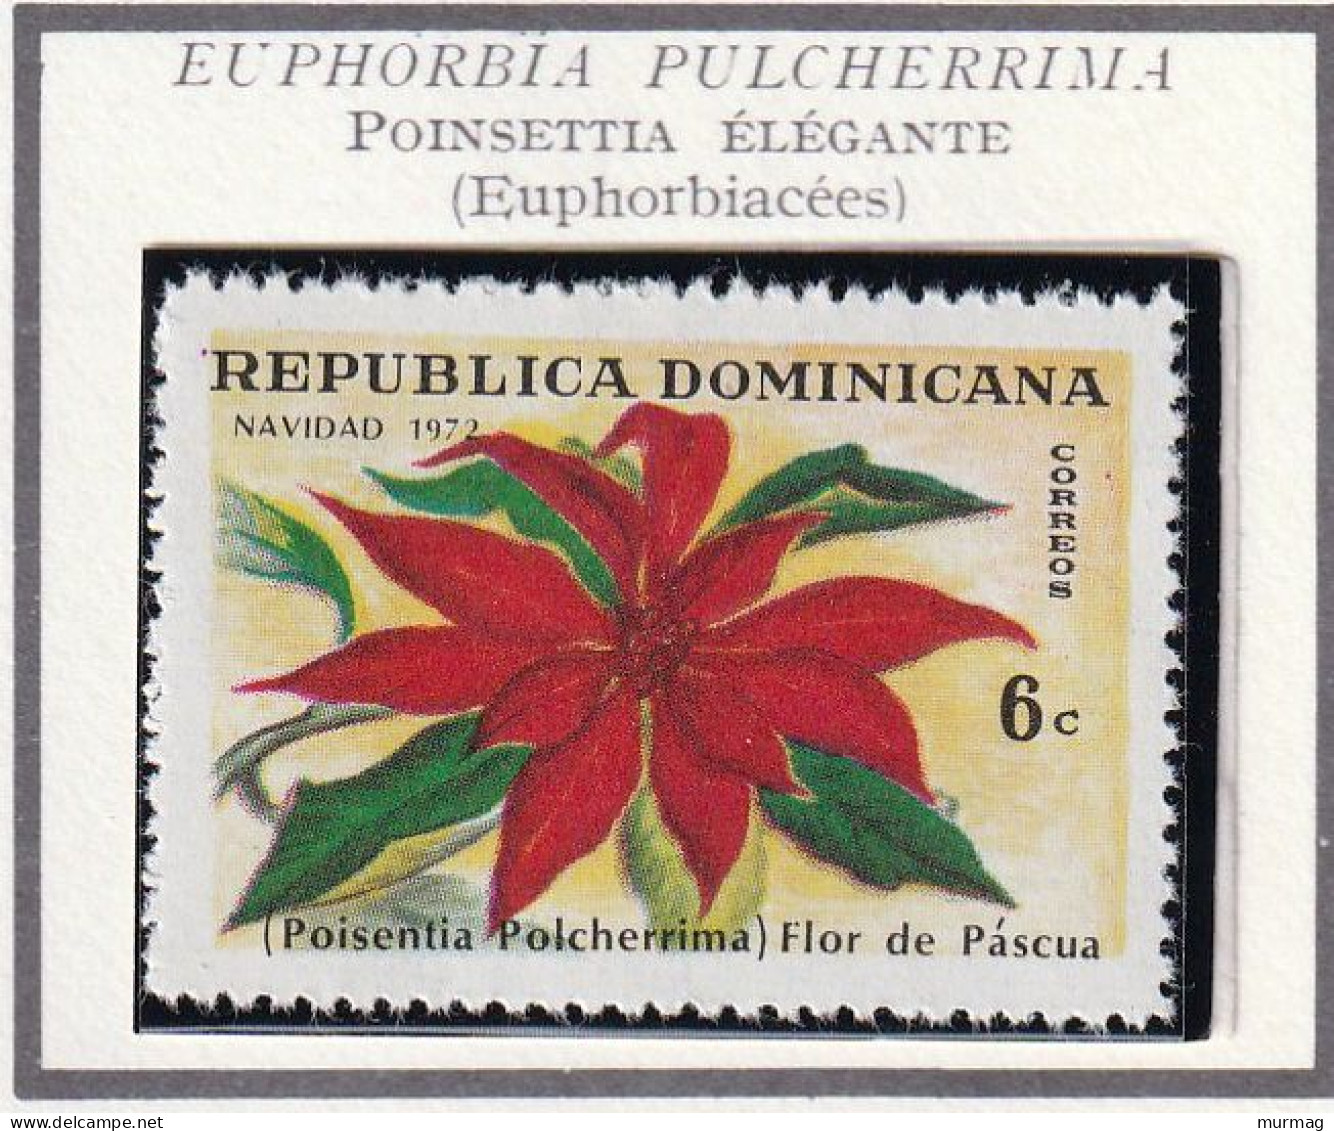 REPUBLIQUE DOMINICAINE - Fleur, Poinsettia élégante, Noël - 1973 - MNH - Dominican Republic